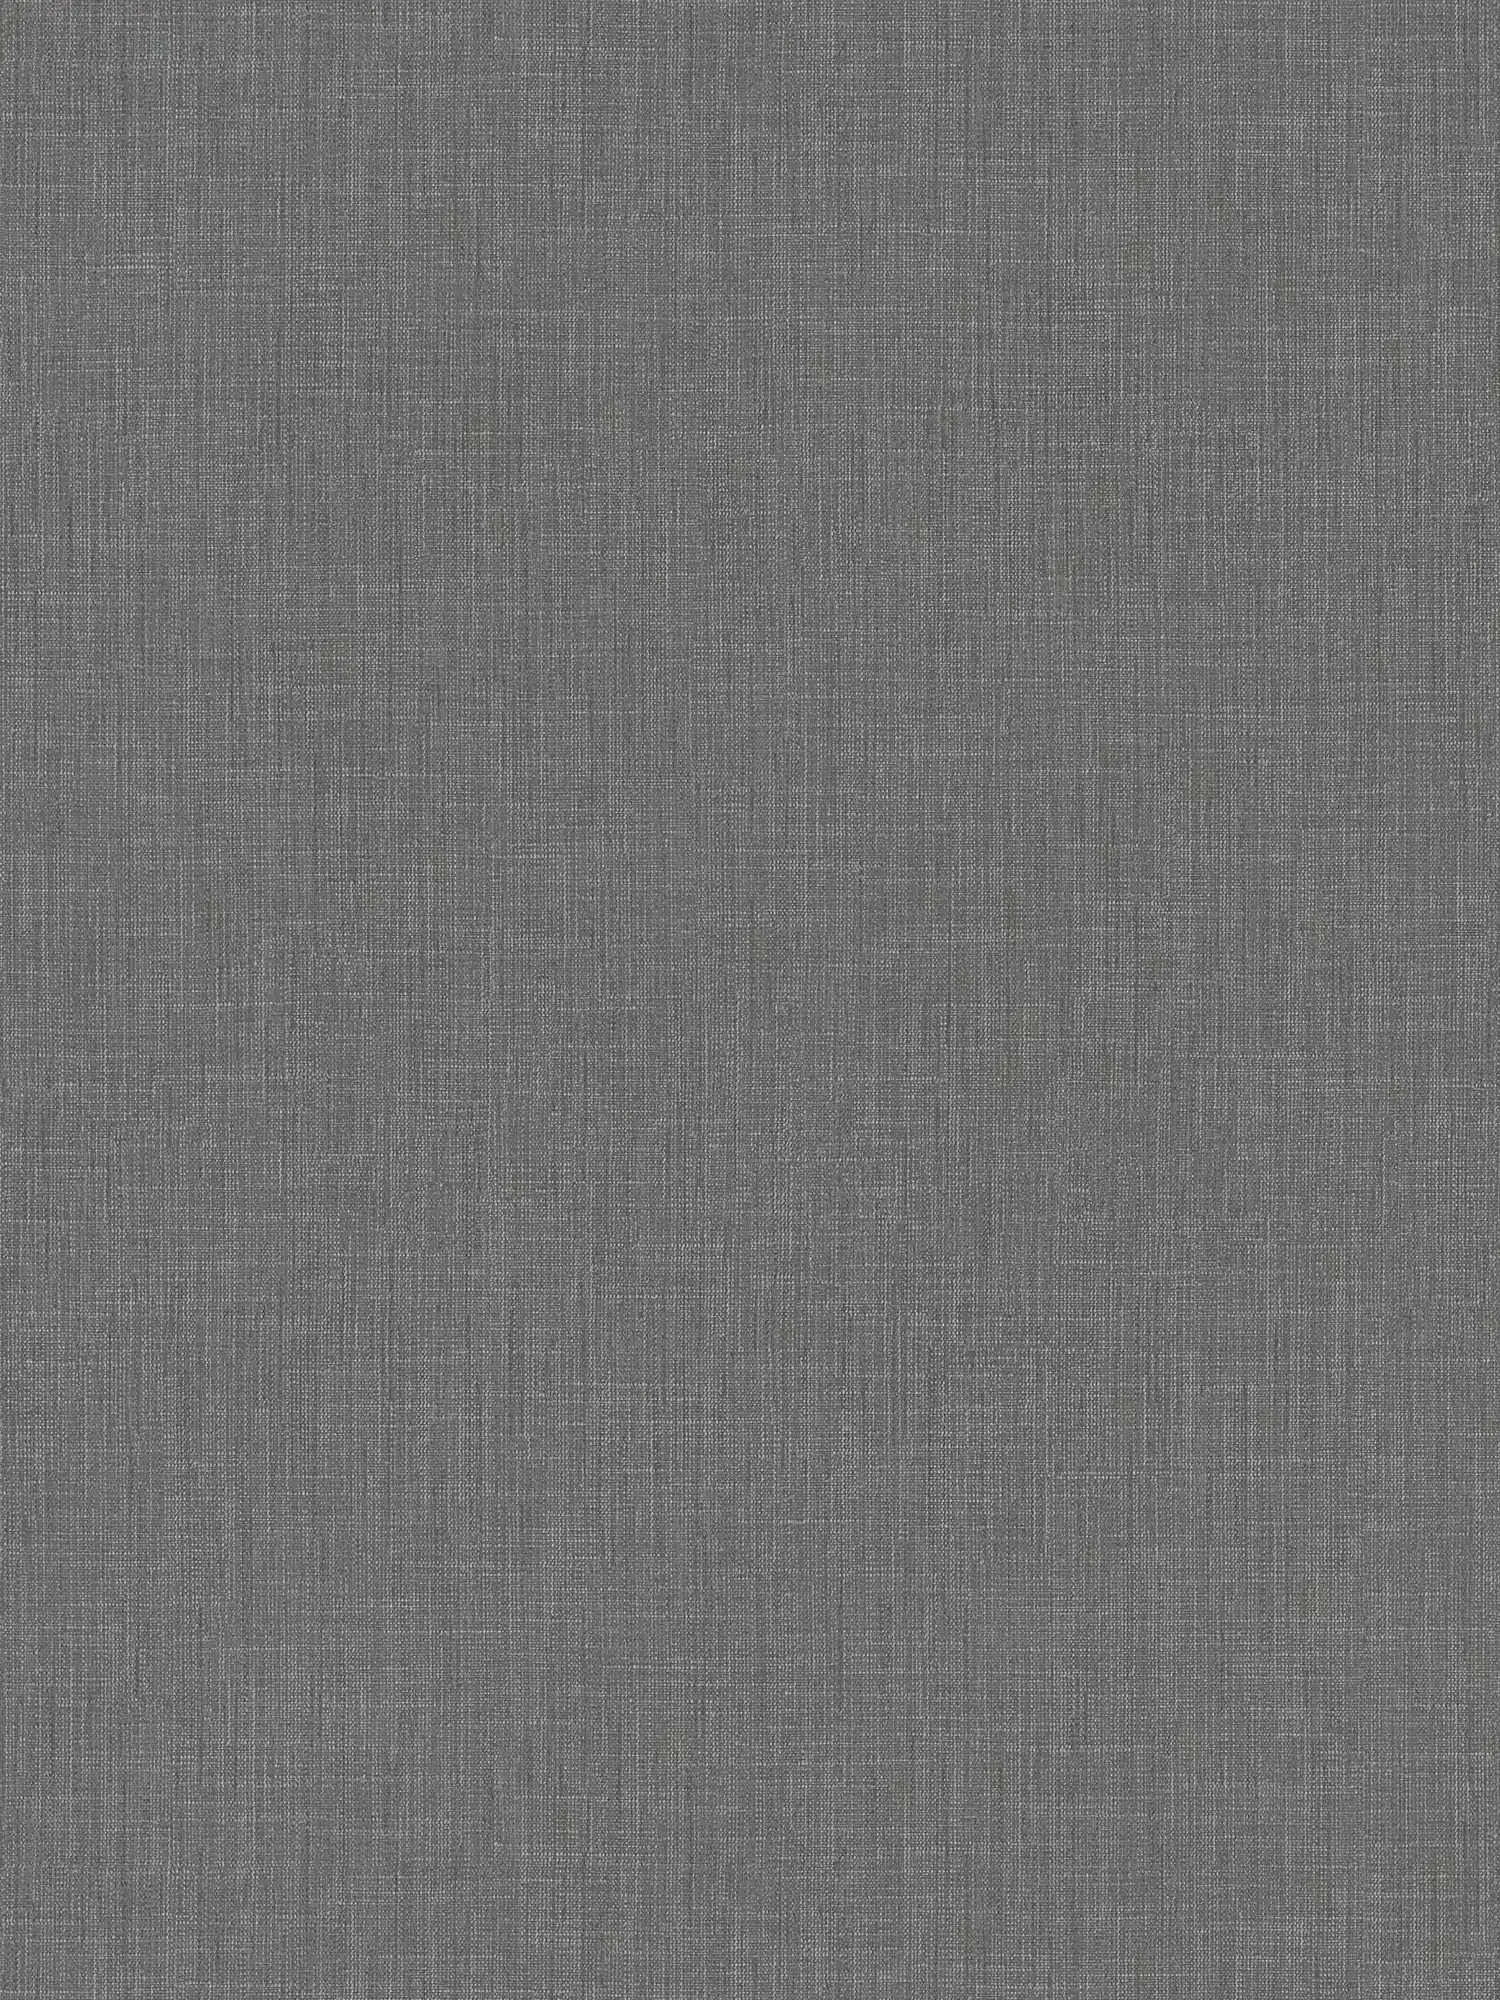 Papel pintado gris moteado con diseño textil en estilo bouclé
